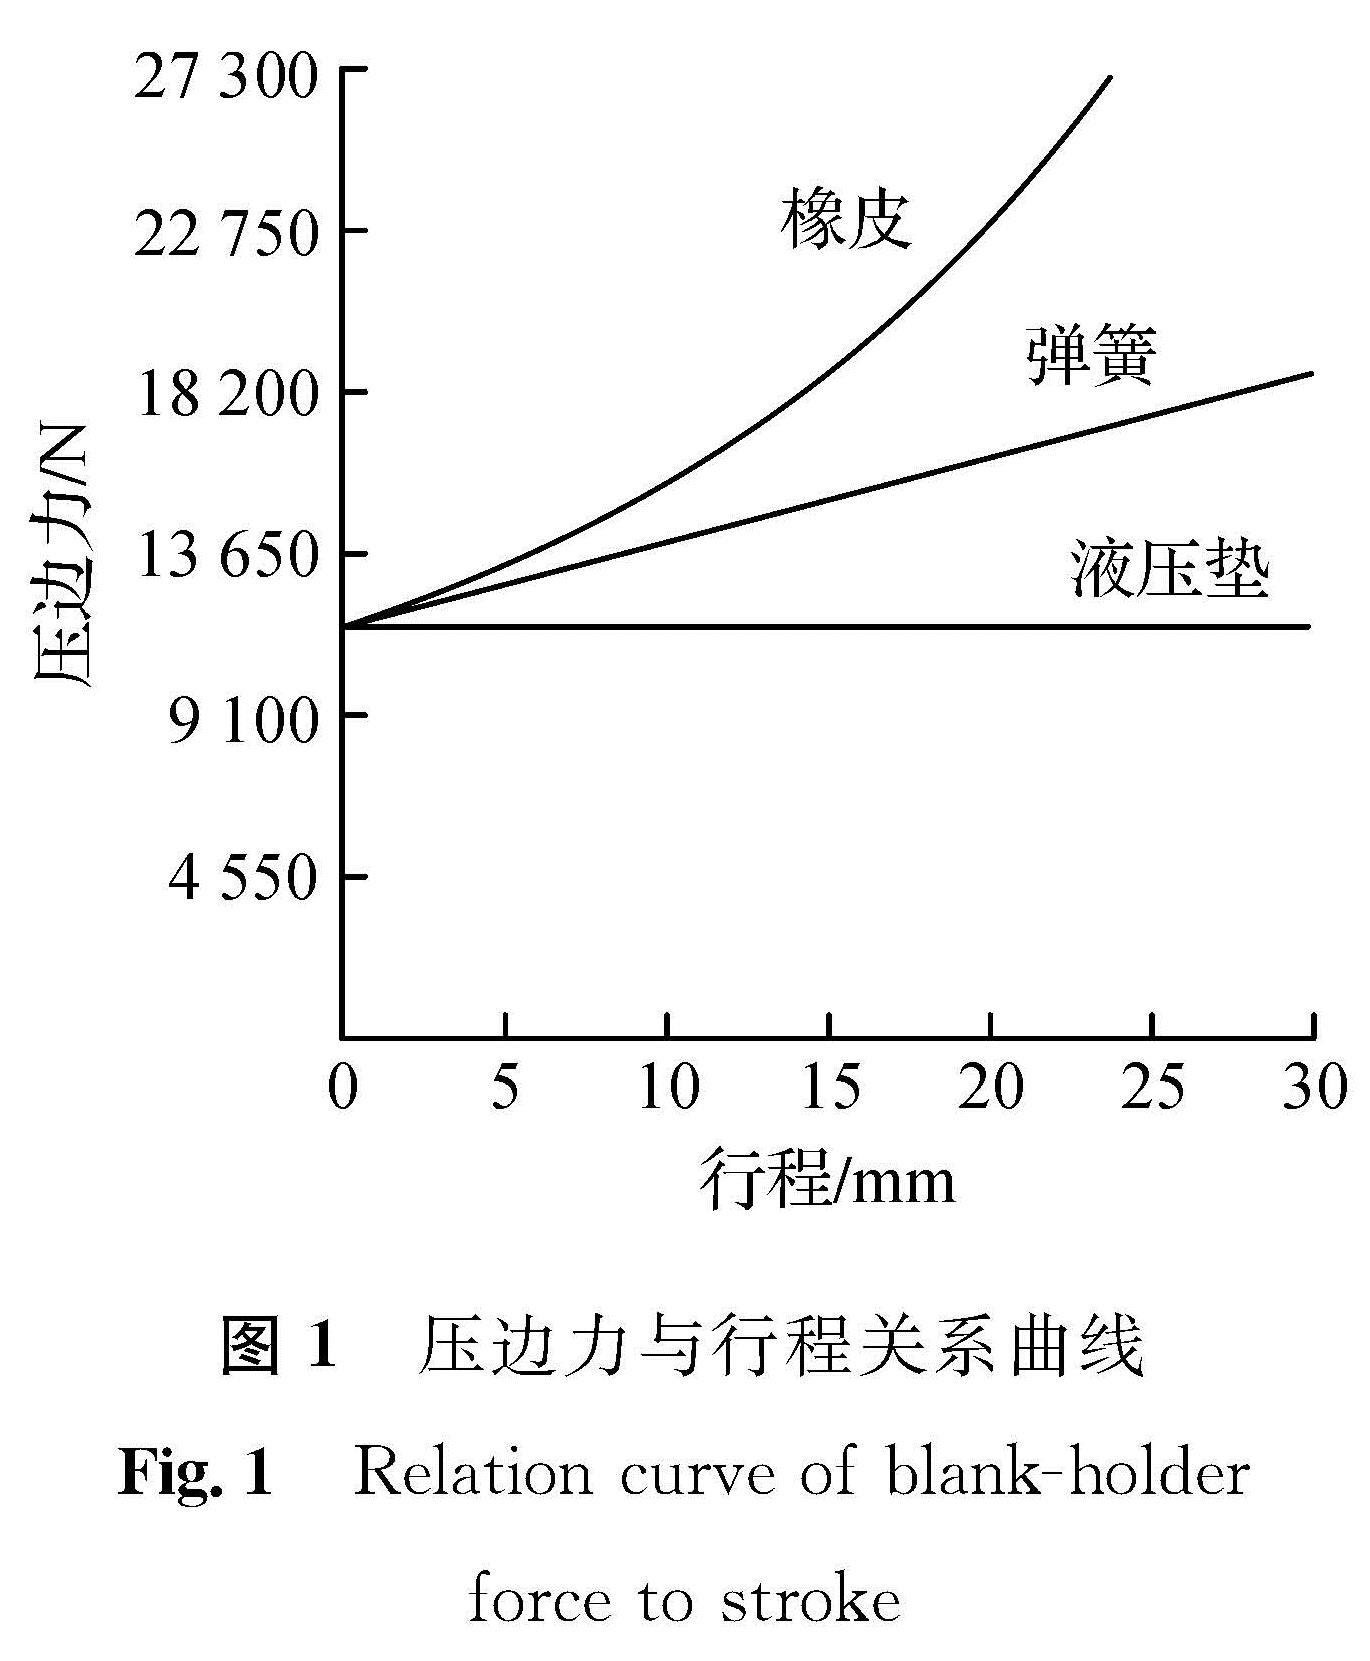 图1 压边力与行程关系曲线<br/>Fig.1 Relation curve of blank-holder force to stroke